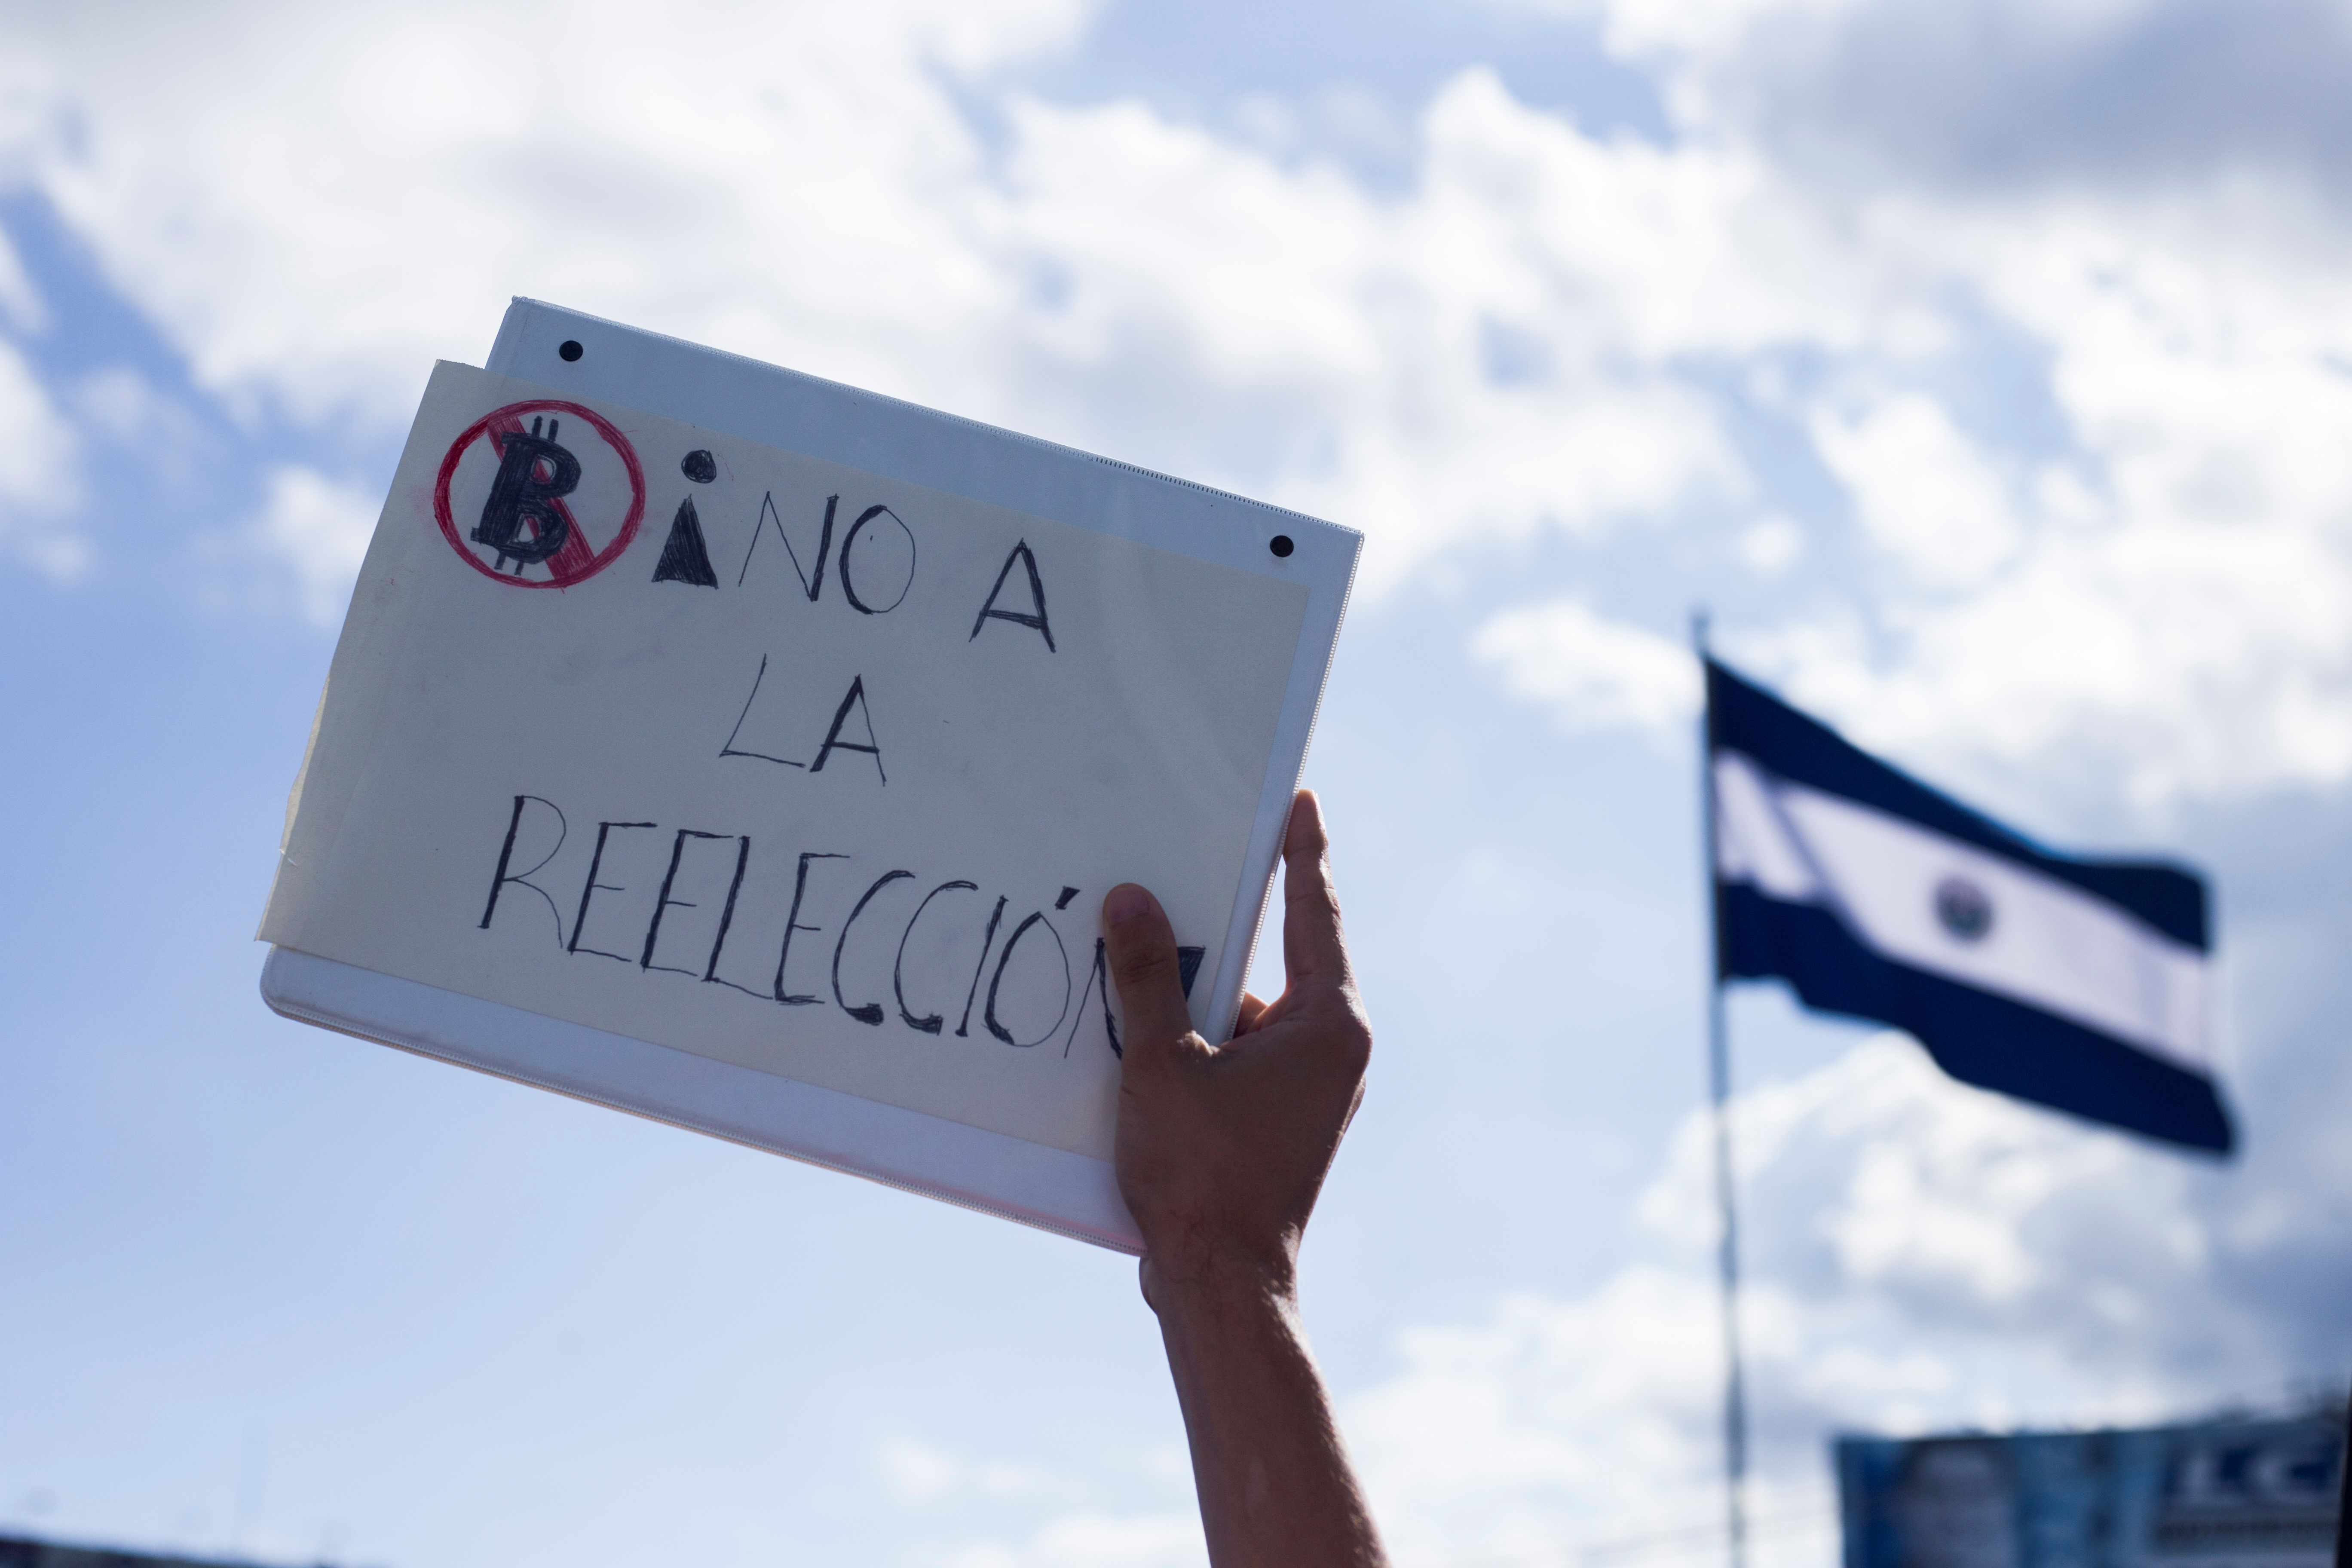 Un manifestante sostiene una pancarta que dice "No a la reelección" durante una protesta contra el presidente de El Salvador, Nayib Bukele, y la reciente decisión de la Sala Constitucional de la Corte Suprema de Justicia de aprobar una ley que permite su reelección en 2024. REUTERS / Victor Pena